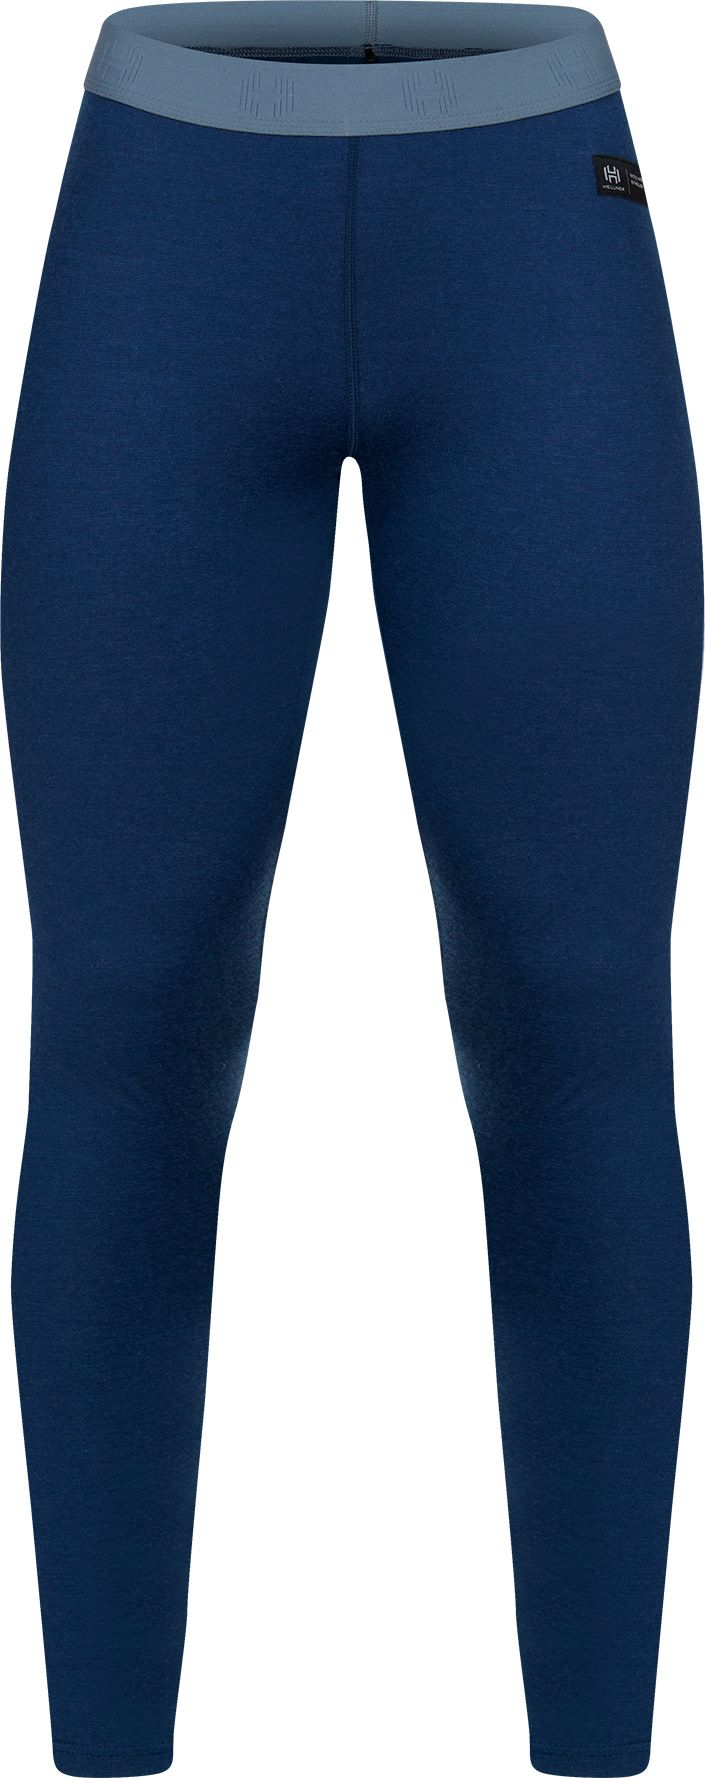 Women's Nieras Merino Pants 2.0 Dress Blue/Flint Stone